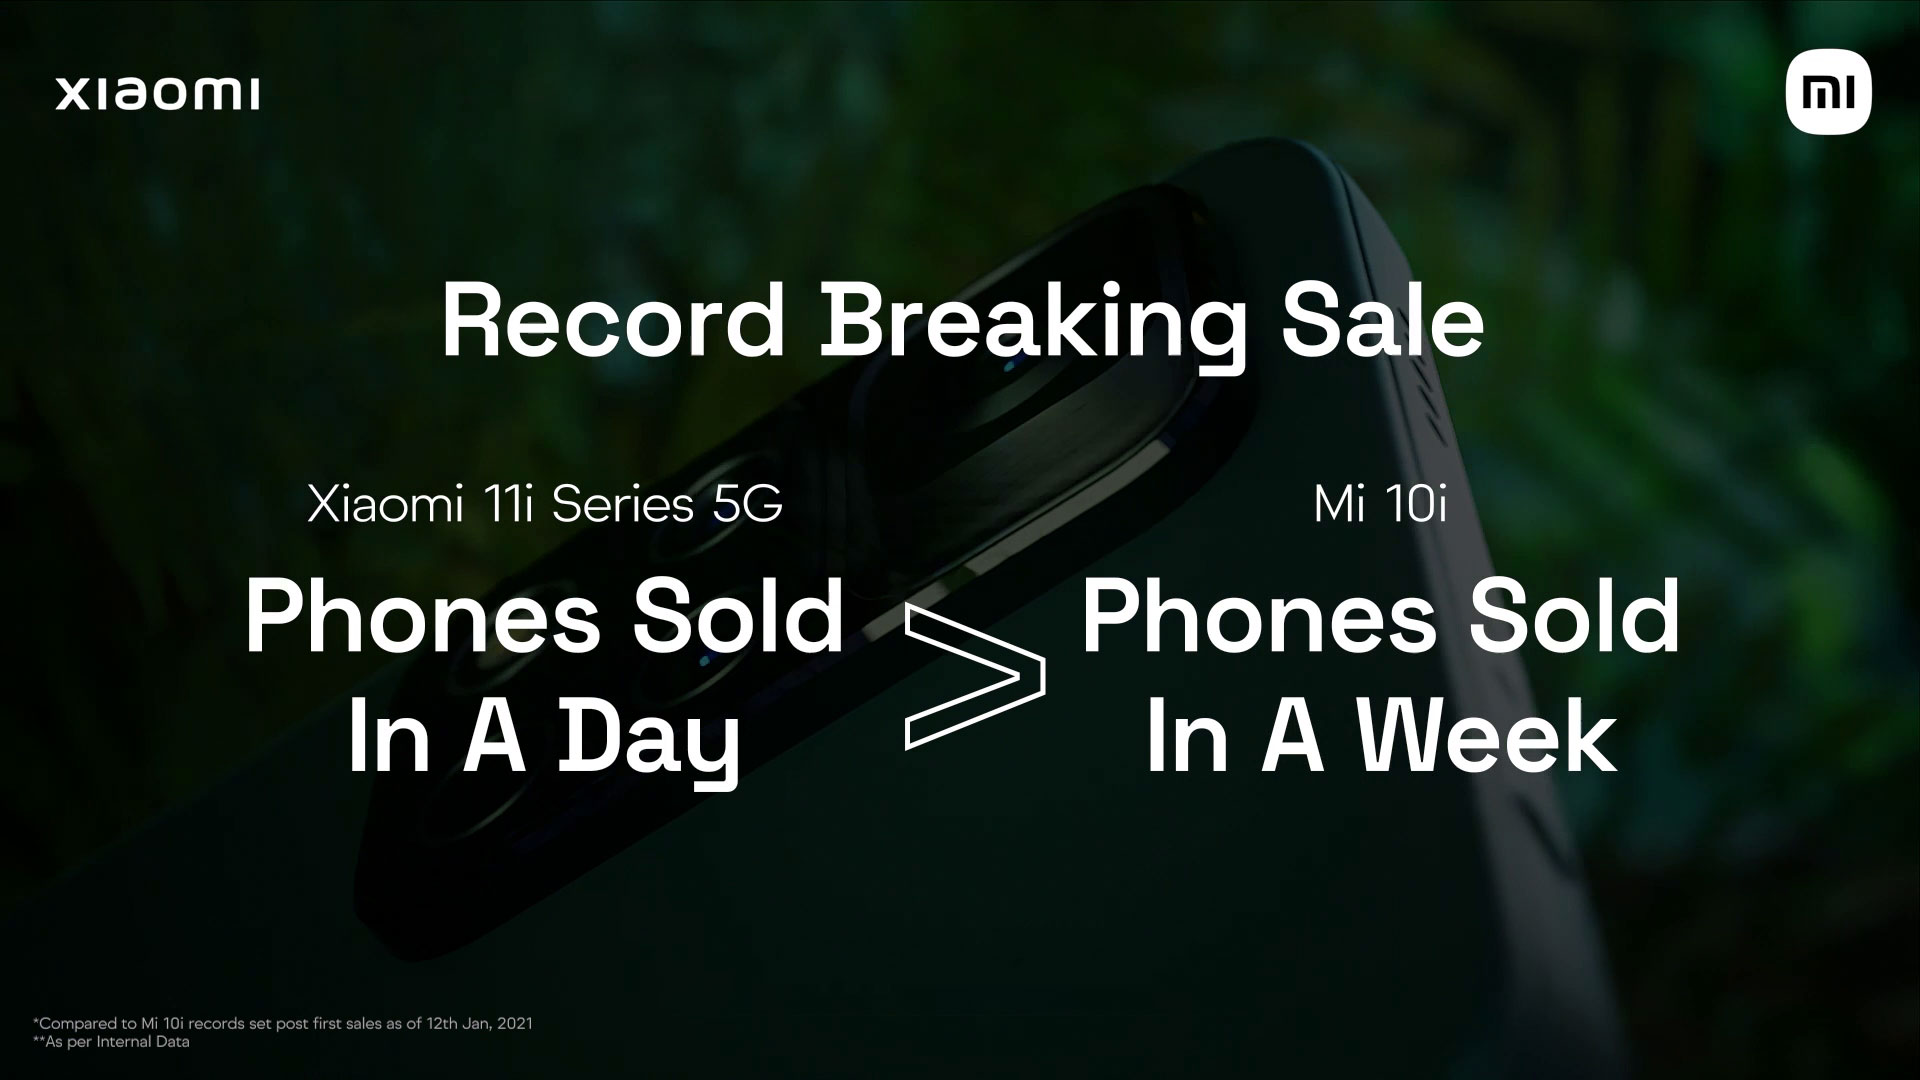 Xiaomi 11i-Smartphones stellen einen neuen Rekord auf – mehr verkaufte Modelle an einem Tag als Xiaomi Mi 10i in einer Woche